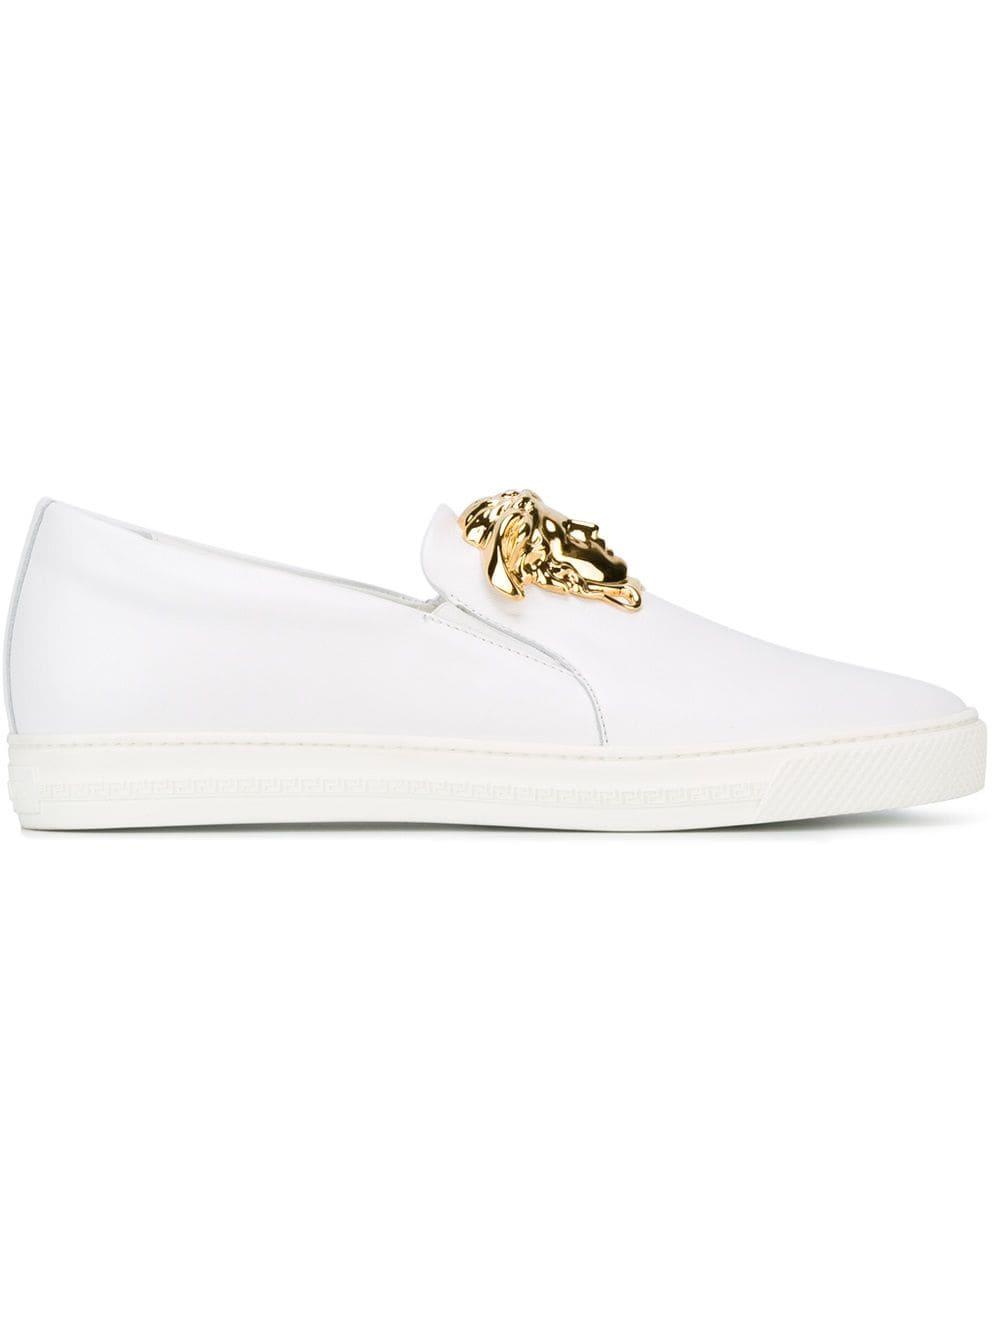 Versace Medusa Slip-on Sneakers in White for Men | Lyst